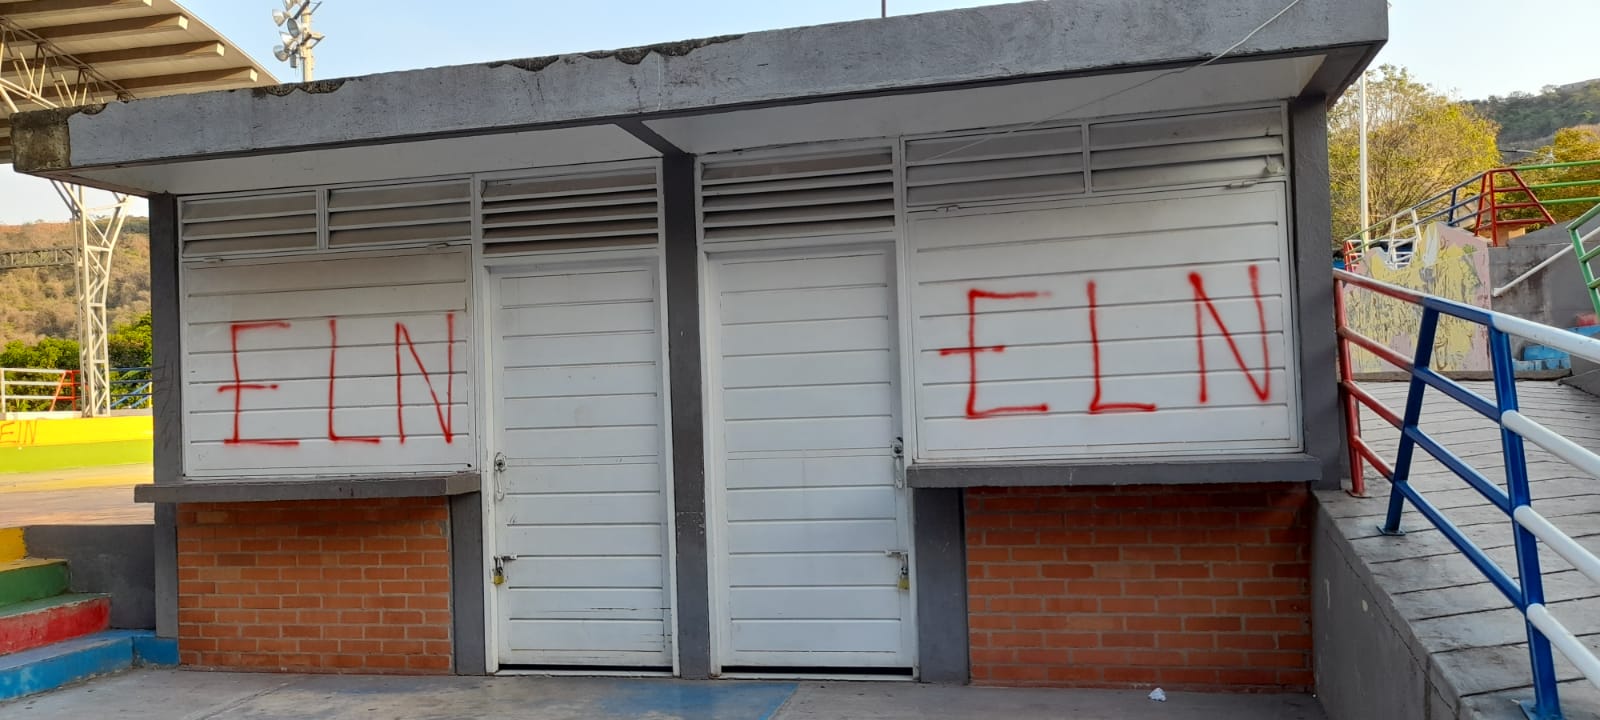 Temor en San José de Oriente, en negocios y casas pintaron grafitis del ELN